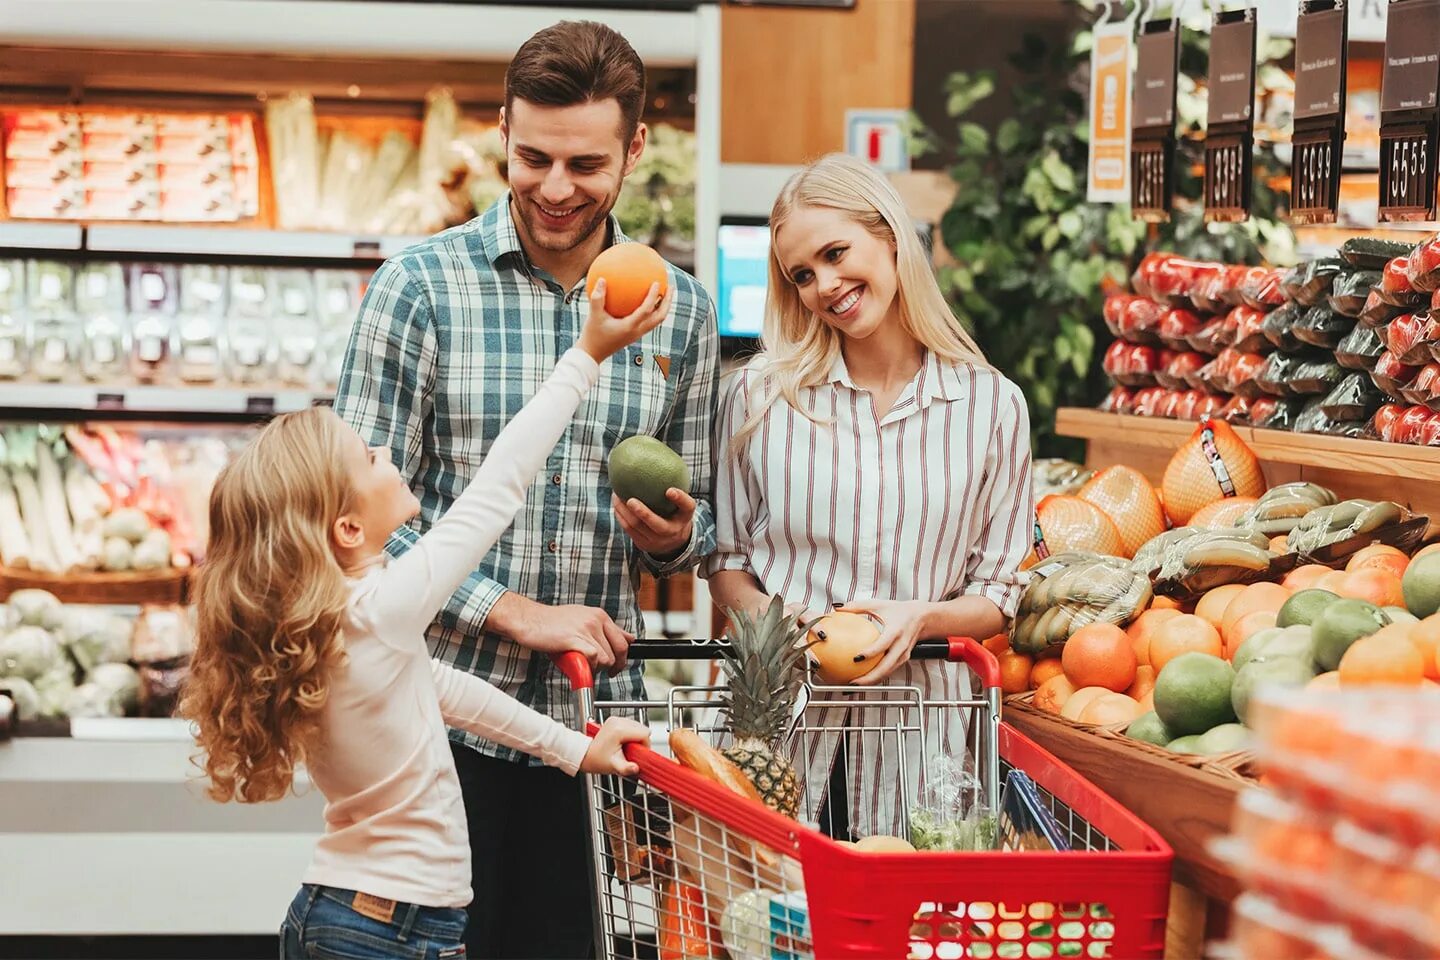 Doing your shopping. Счастливая семья в супермаркете. Семья в супермаркете с тележкой. Супермаркет семья фон. Семья с покупками продукты.